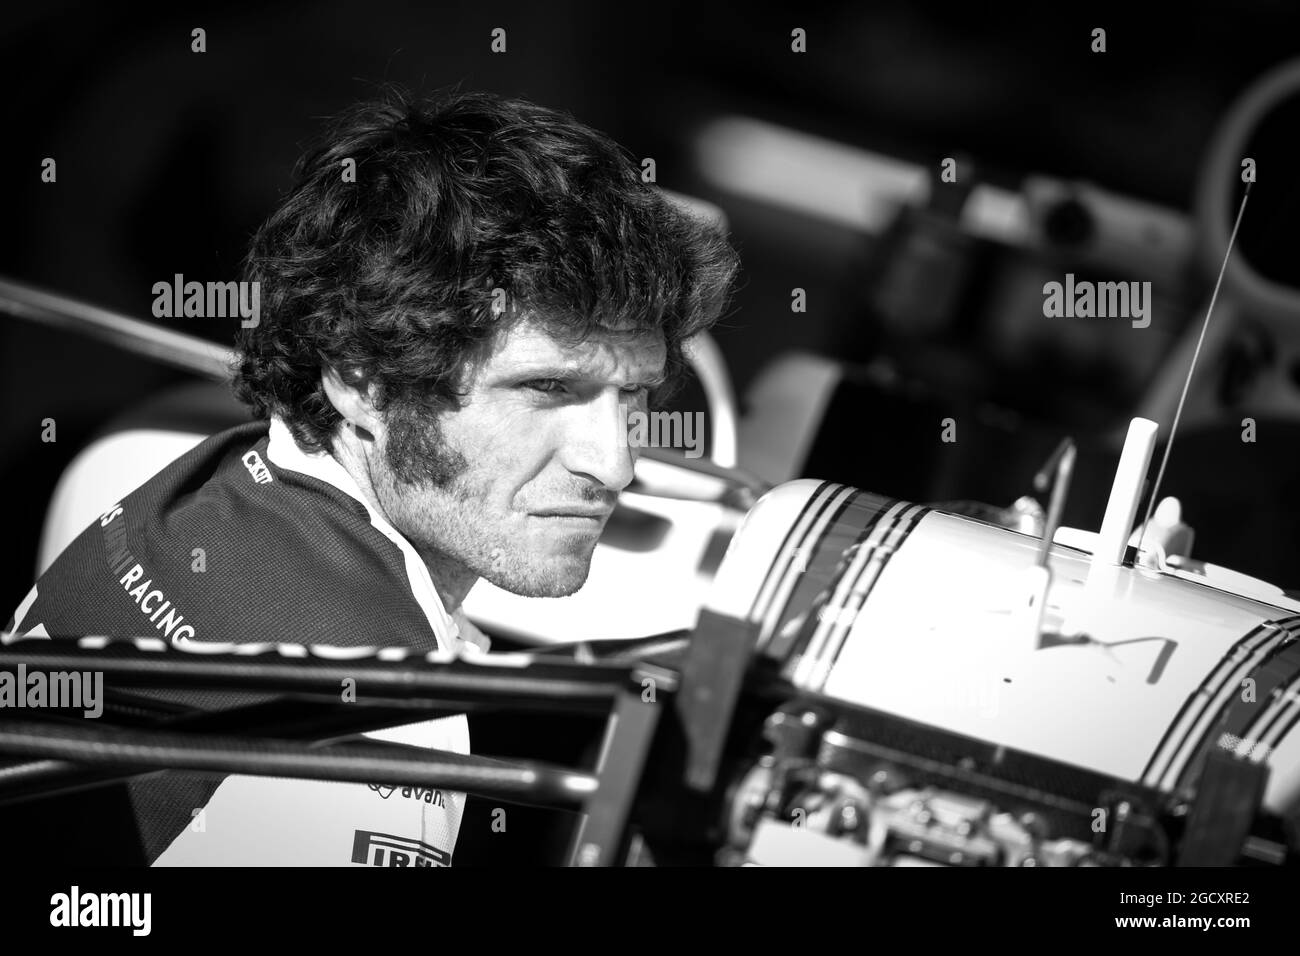 Guy Martin (GBR) Motorrad-Rennfahrer und TV-Persönlichkeit mit dem Williams-Team. Großer Preis von Belgien, Freitag, 25. August 2017. Spa-Francorchamps, Belgien. Stockfoto